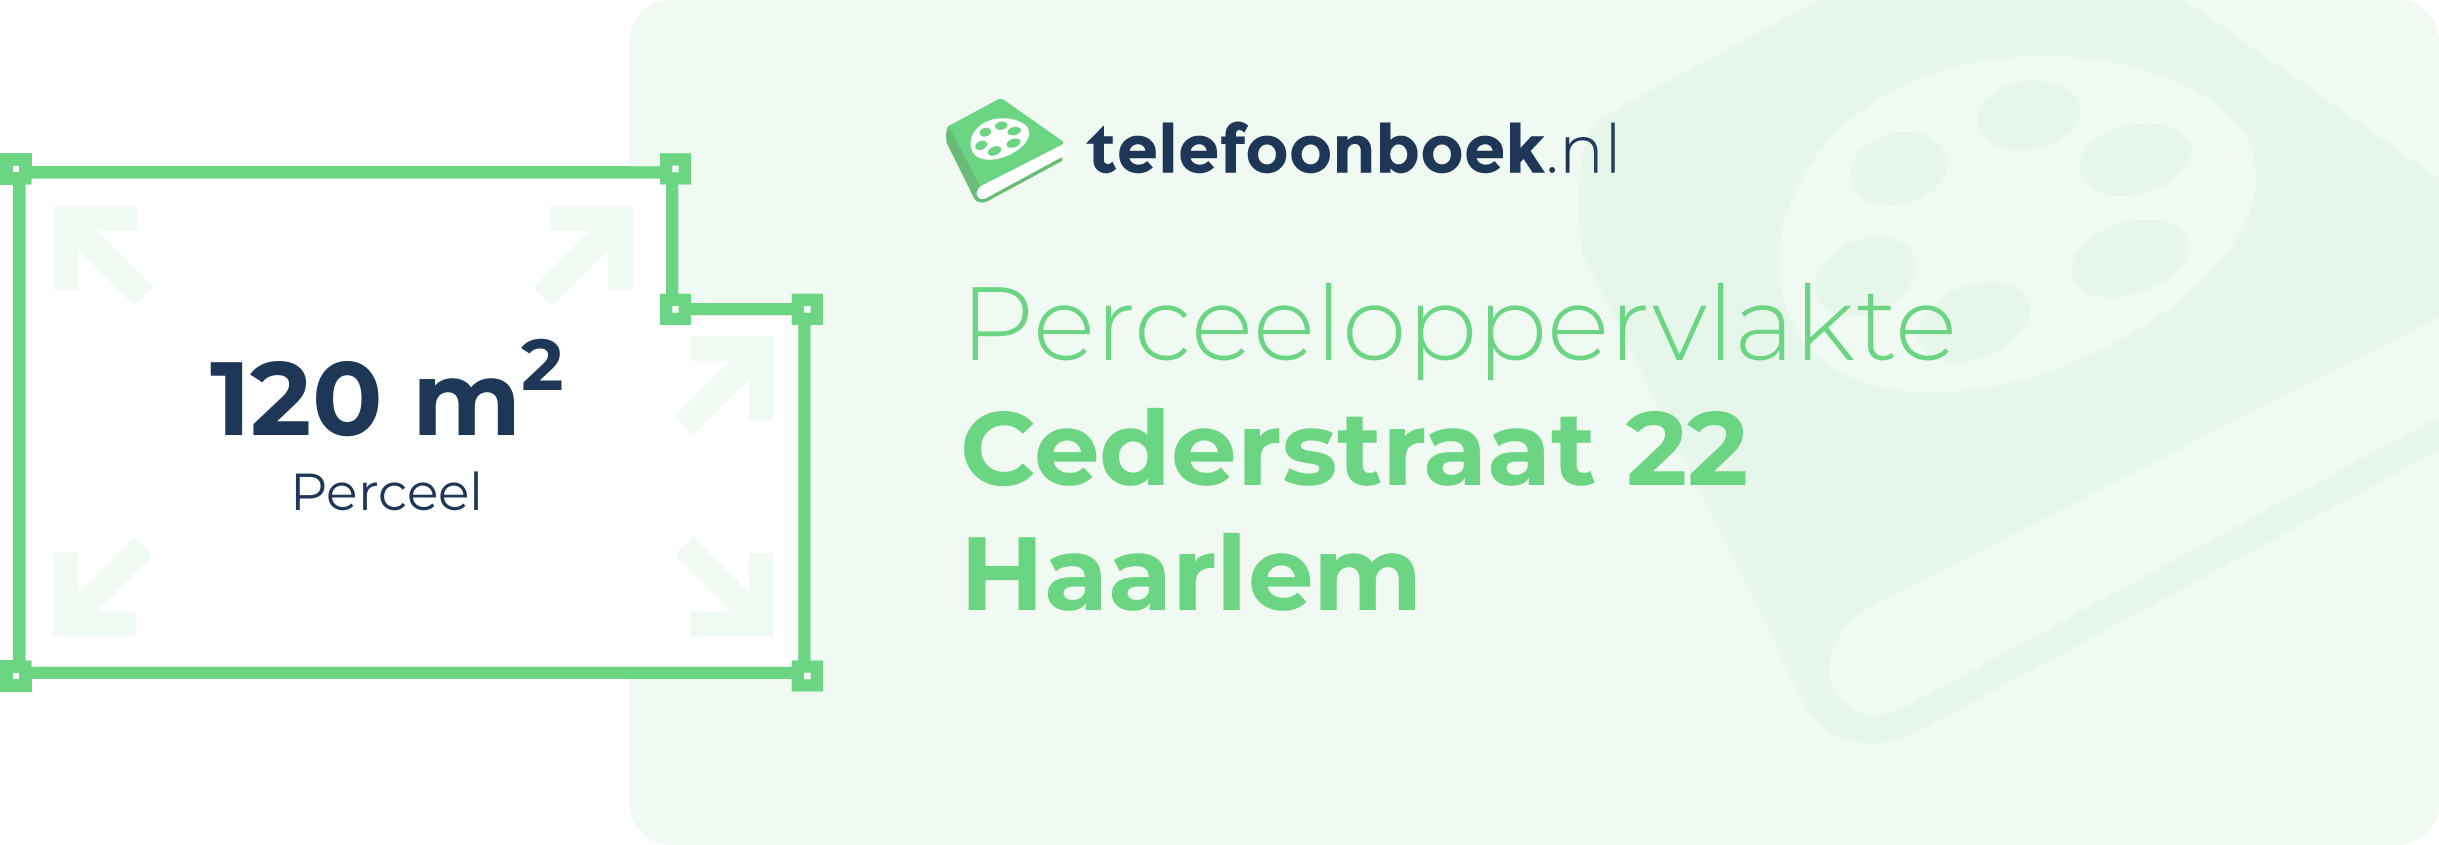 Perceeloppervlakte Cederstraat 22 Haarlem